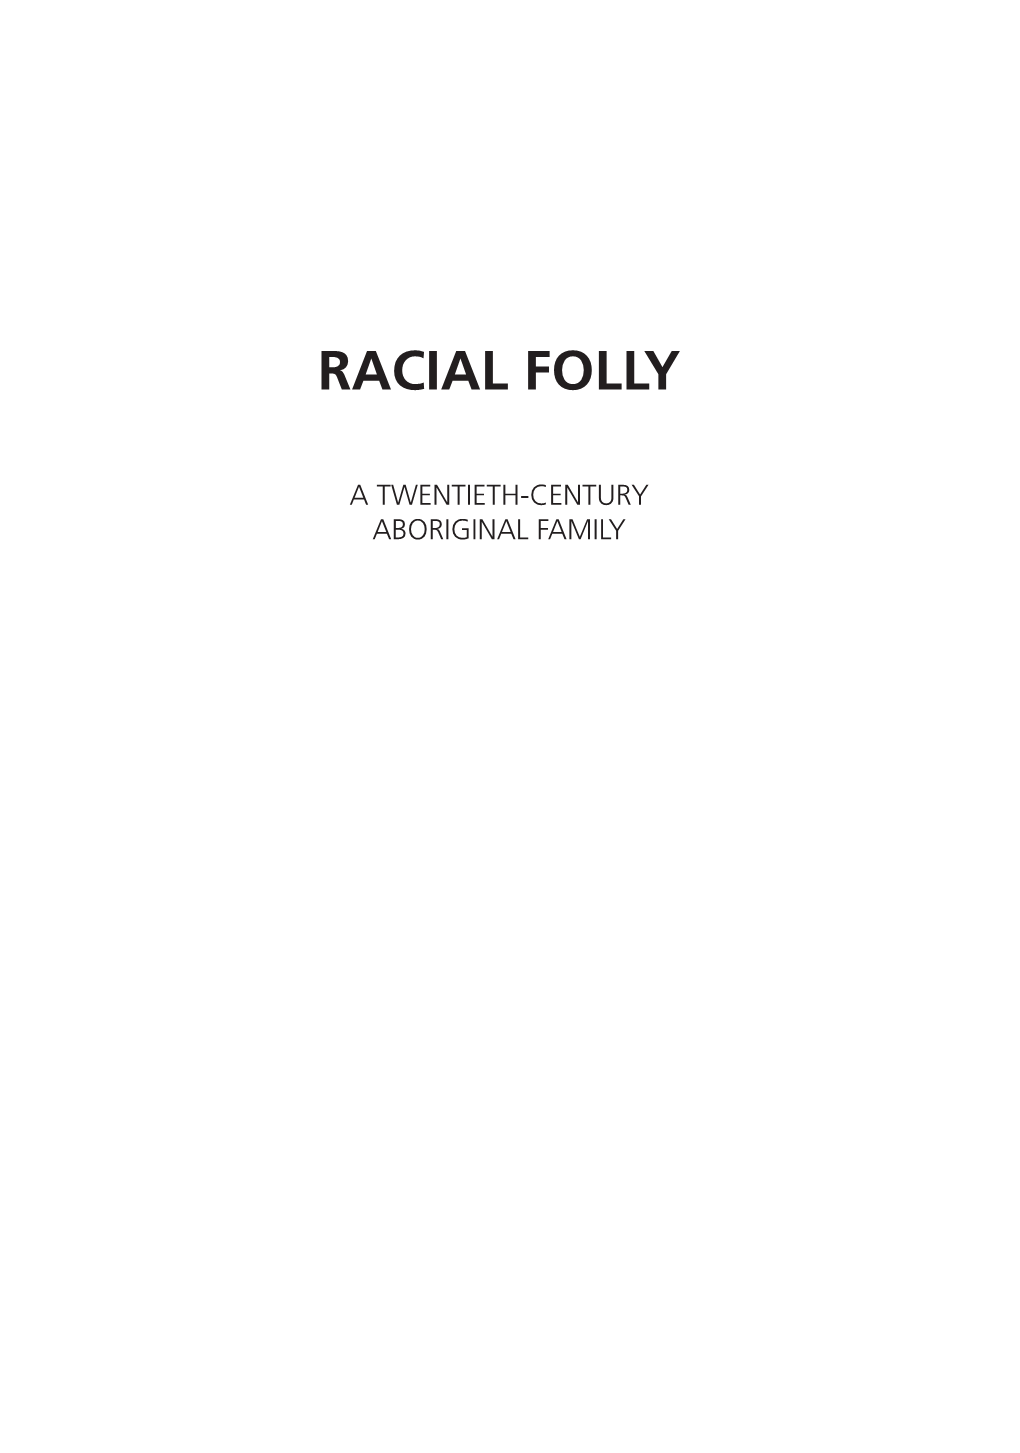 Racial Folly: a Twentieth-Century Aboriginal Family